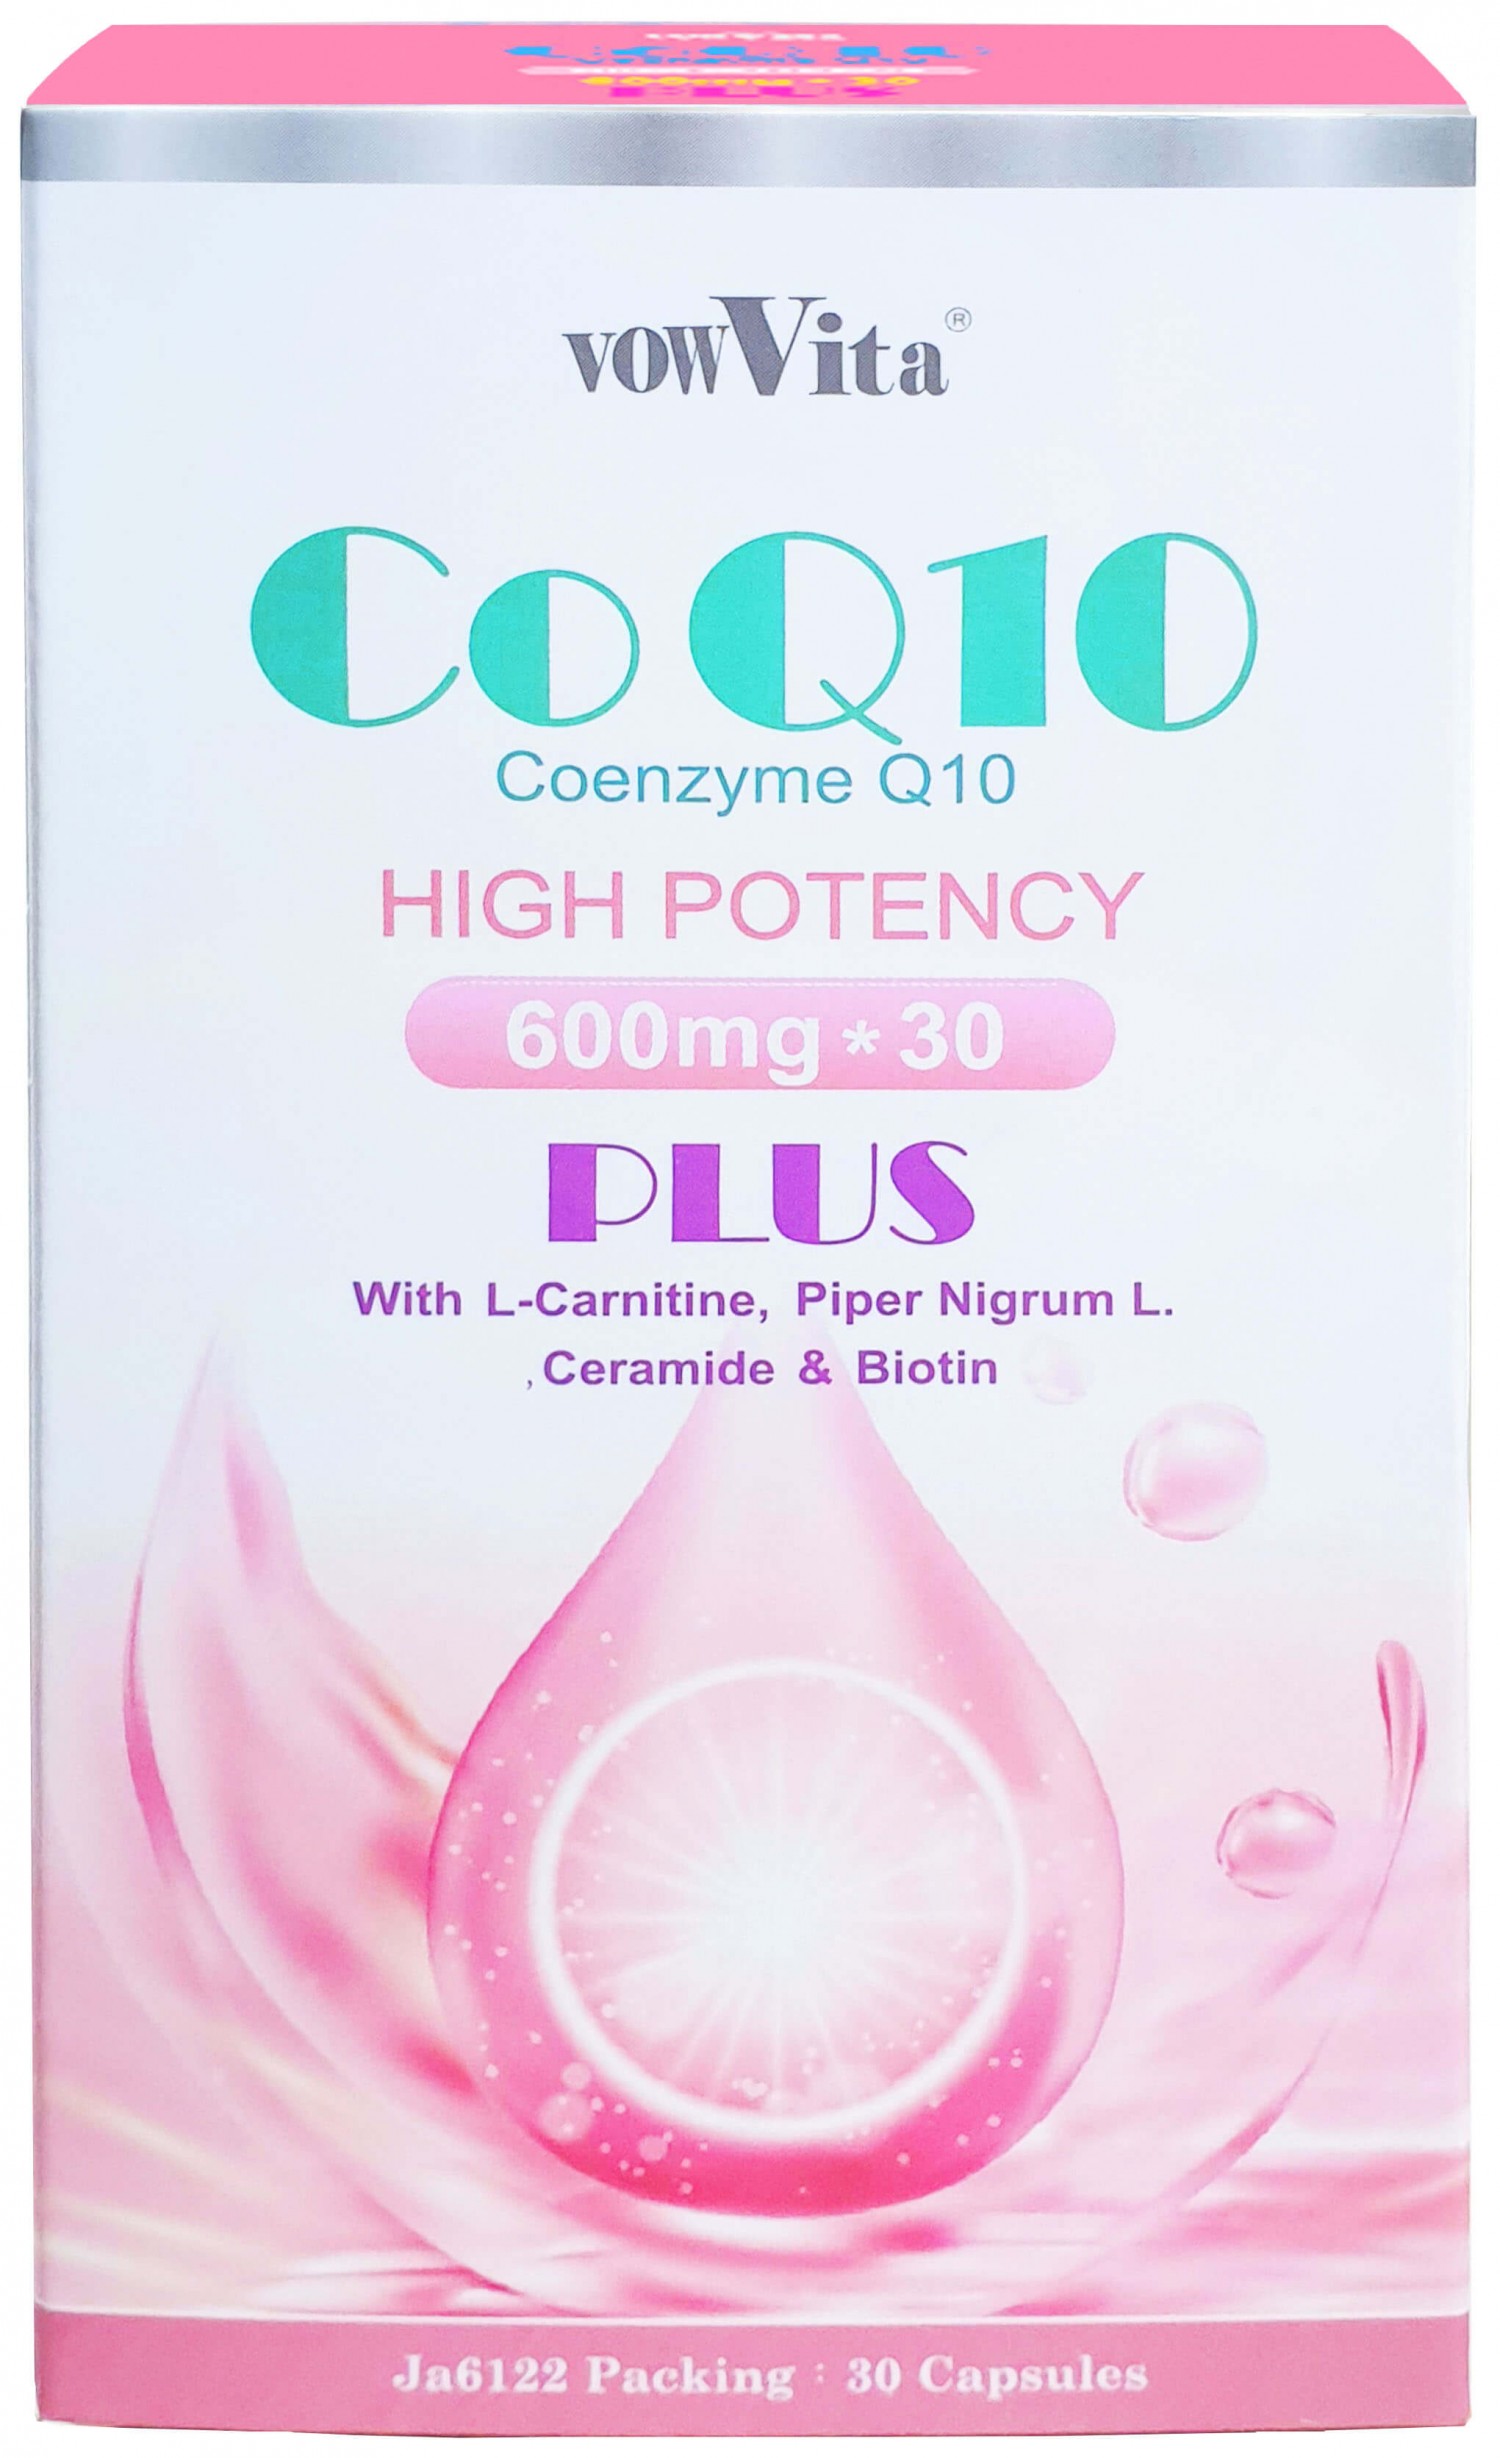 【日本進口】CoQ10+左旋肉酸+胡椒素+神經醯胺+生物素軟膠囊 (30粒盒裝/每粒600mg)